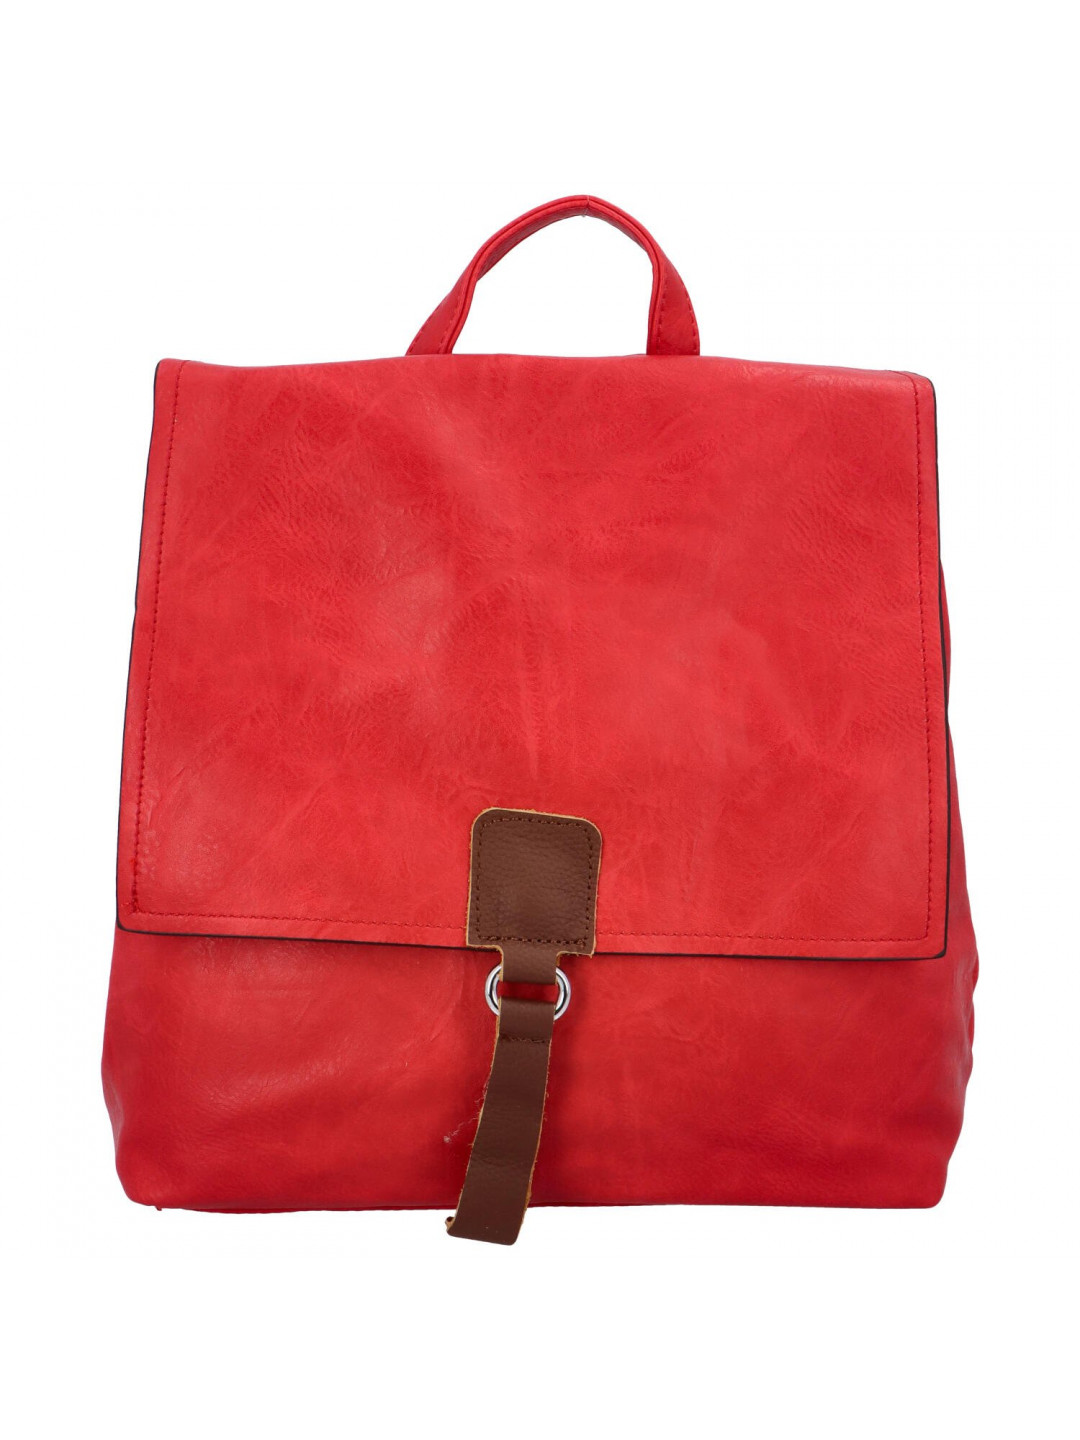 Dámský koženkový batůžek s výraznou klopou Emiliana červená